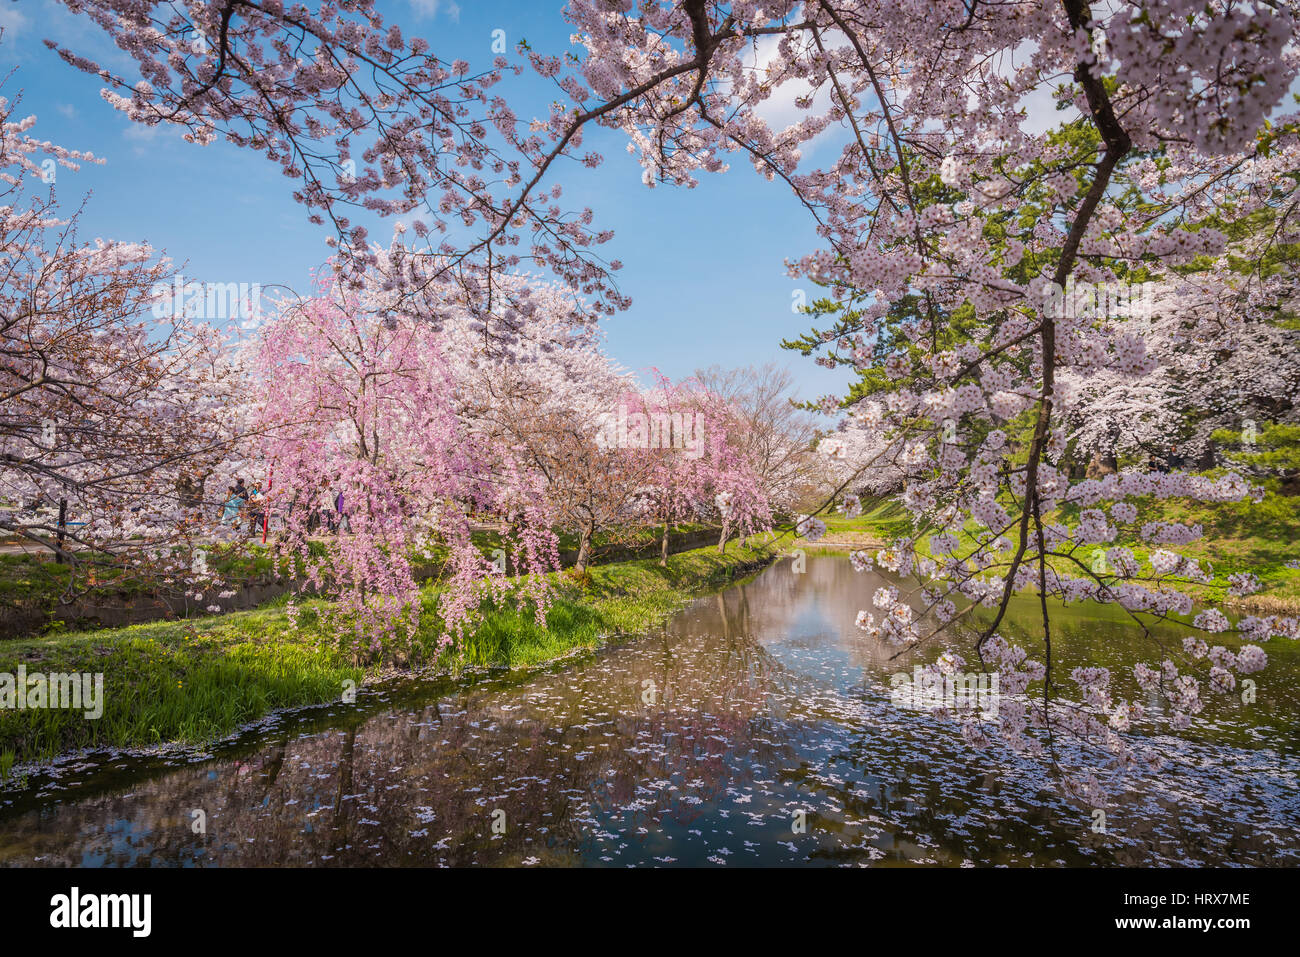 Aomori, Japan - 28. April 2014: Reisende in Hirosaki Castle Park. Die geräumigen öffentlichen Park, der schöne rosa Kirschblüte in vollem Umfang hat Stockfoto